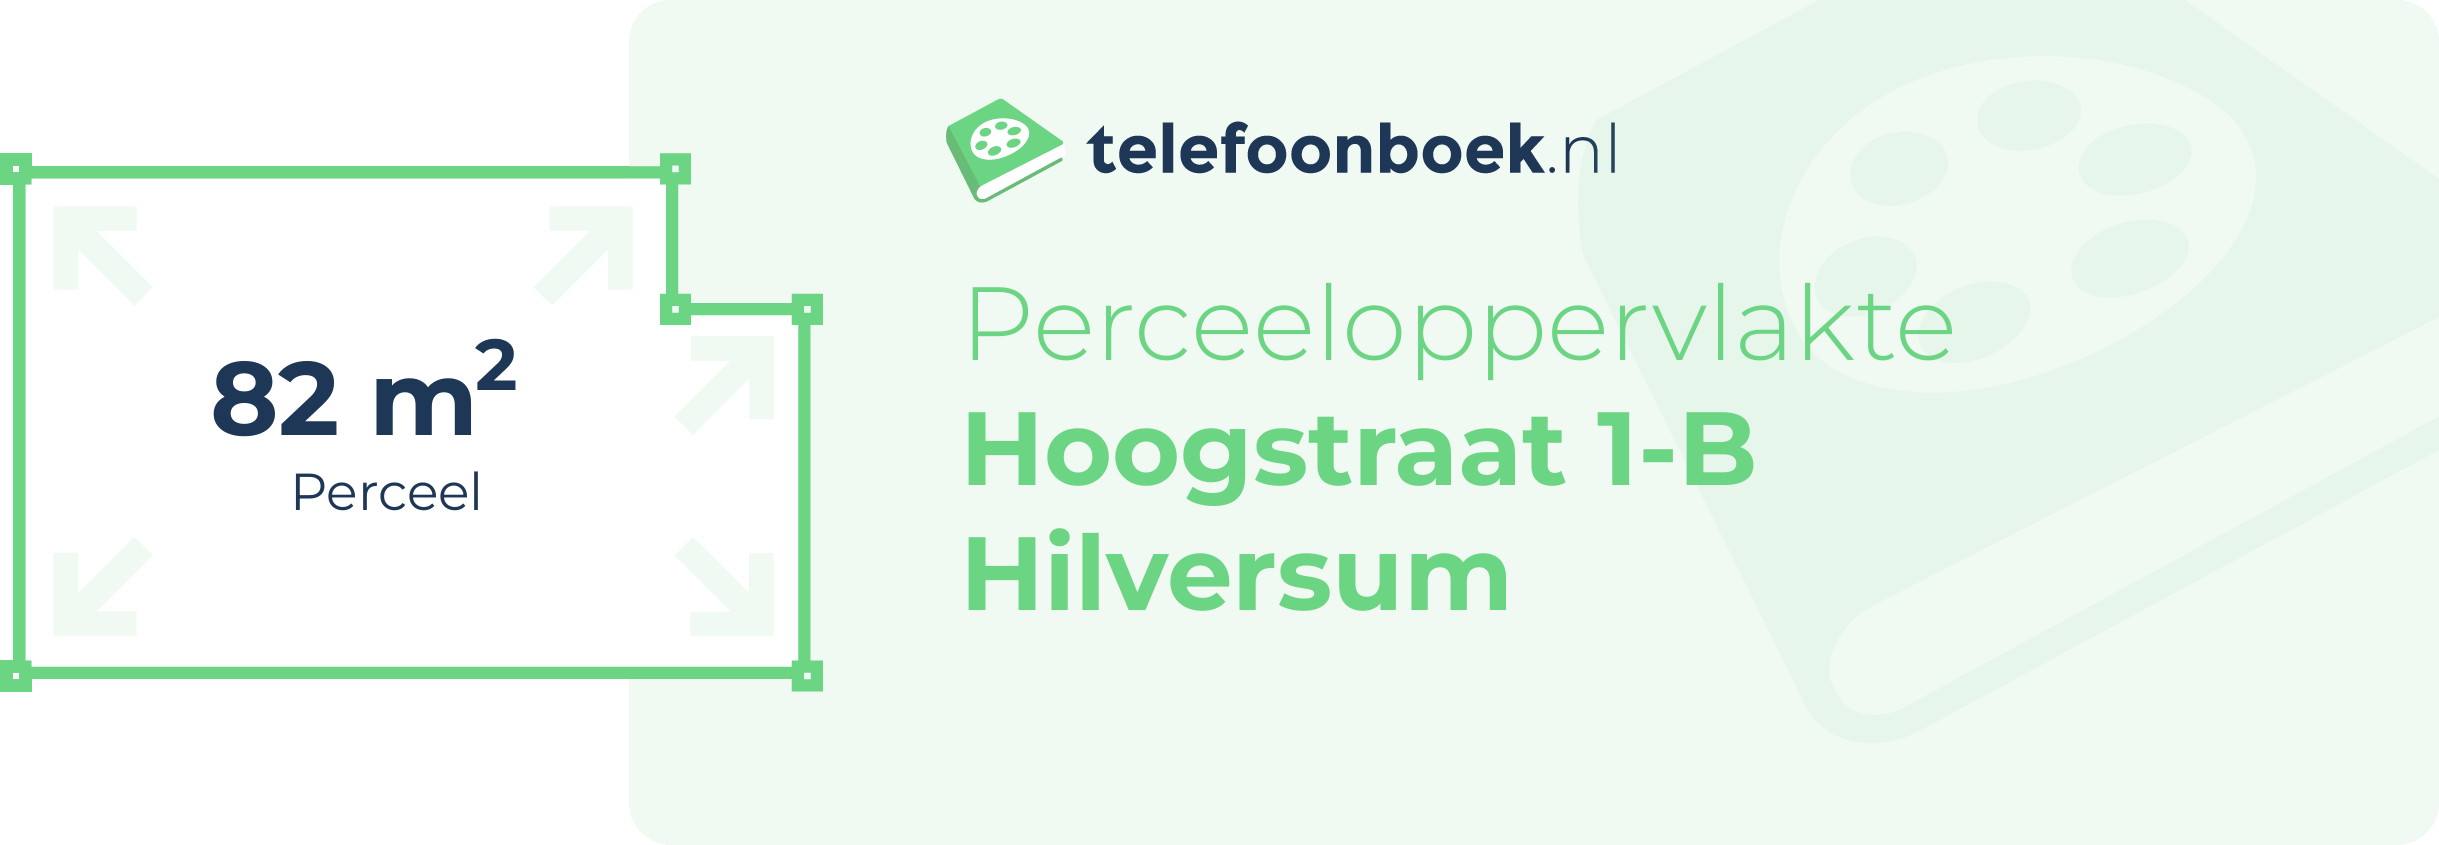 Perceeloppervlakte Hoogstraat 1-B Hilversum